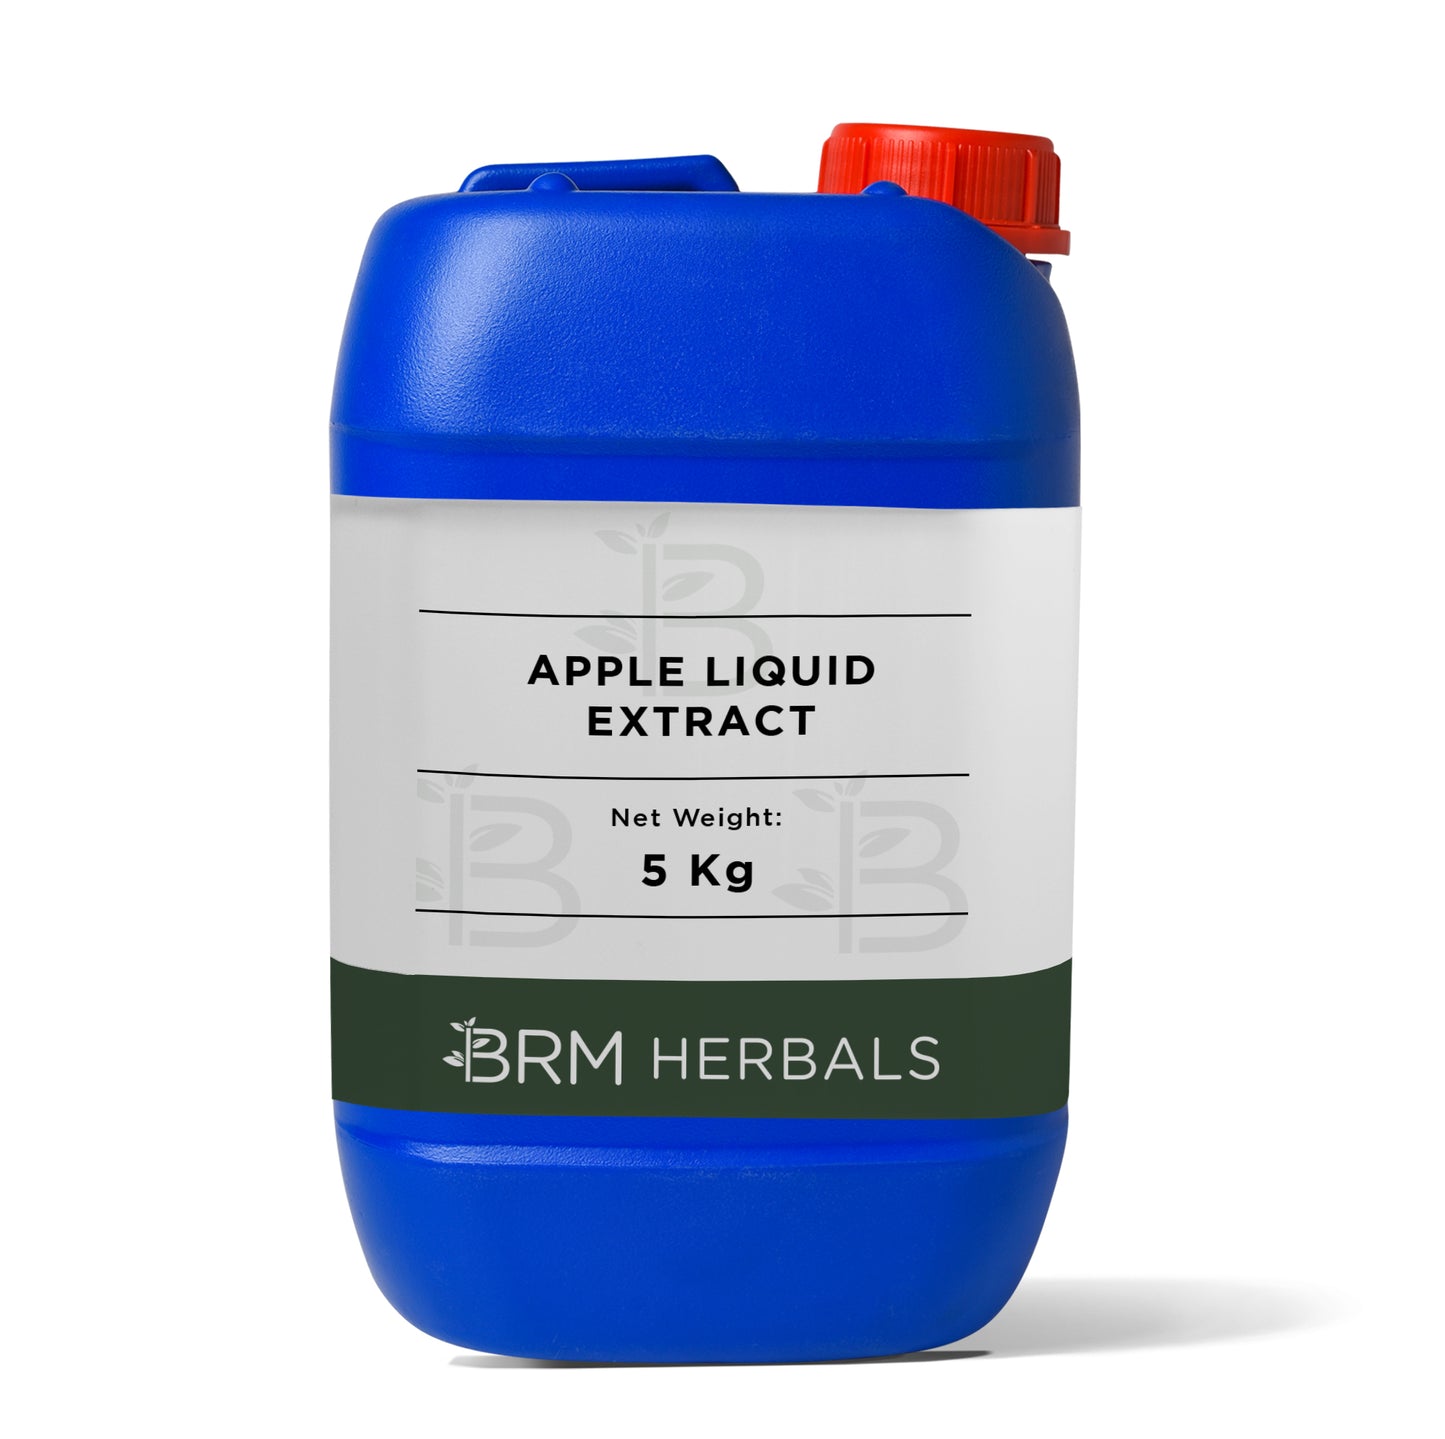 Apple Liquid Extract